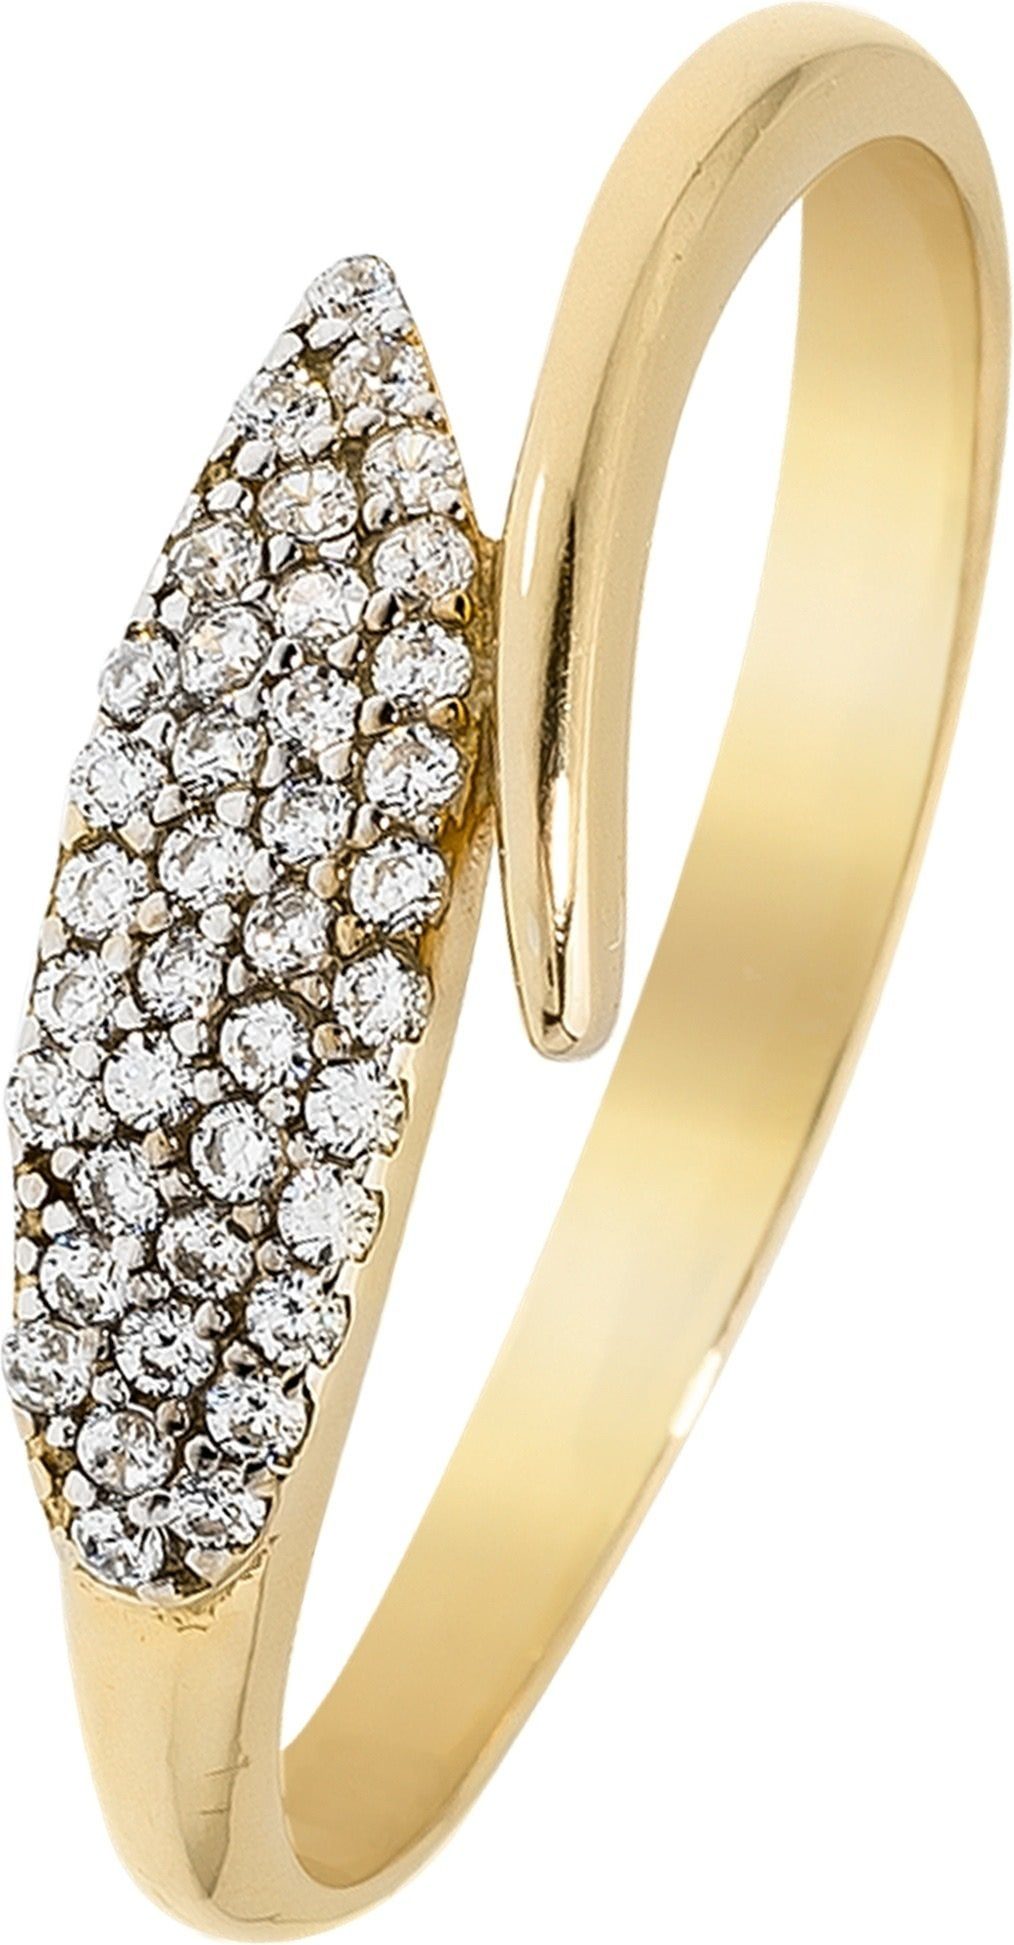 Balia Goldring Balia Ring Blatt für Damen 8K Gold (Fingerring), Fingerring Größe 54 (17,2), 333 Gelbgold - 8 Karat (Blatt gold) Gold 3